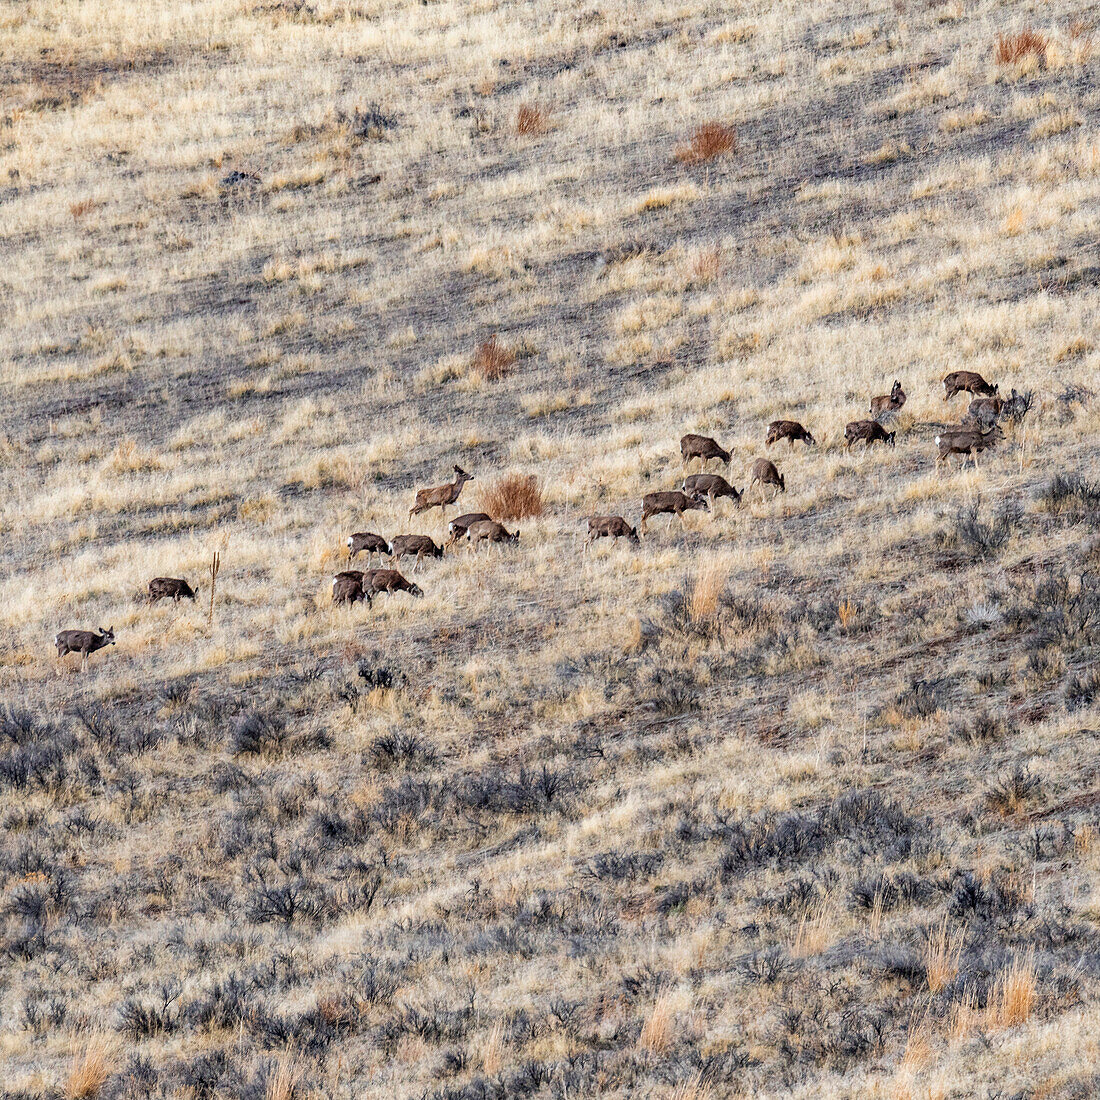 USA, Idaho, Bellevue, Herd of deer grazing on hillside